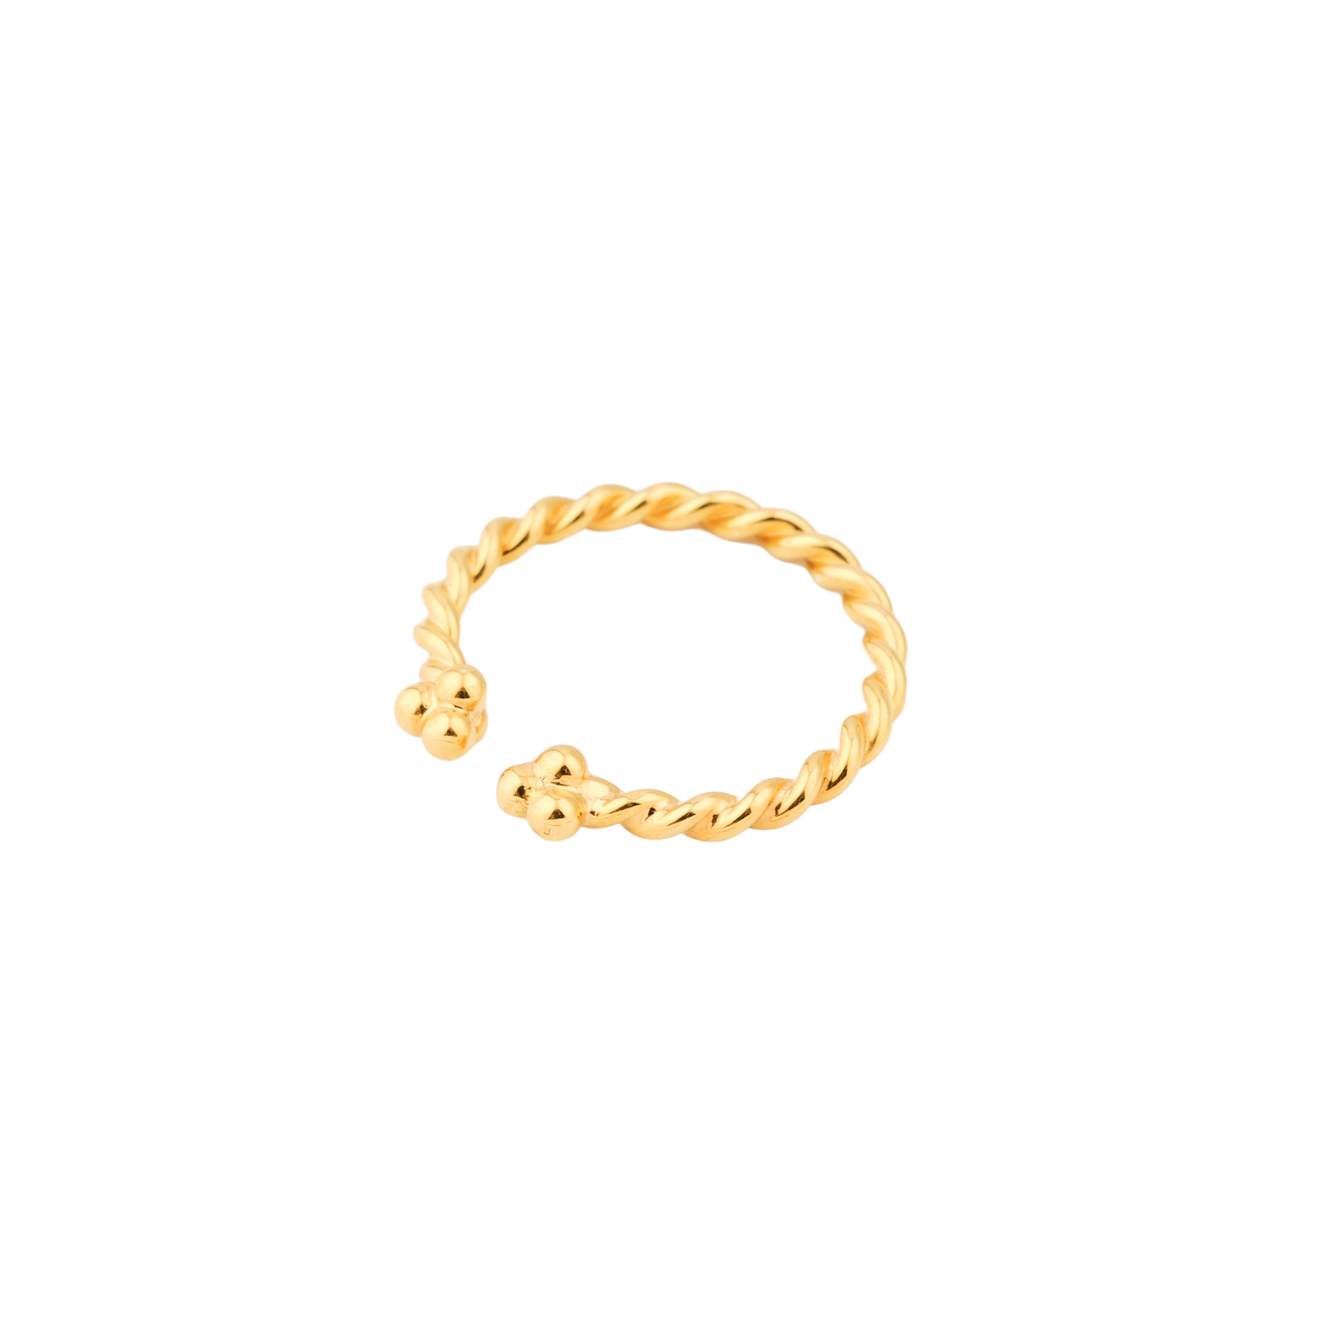 NÁNA Позолоченное кольцо ПУТЬ из серебра poche позолоченное кольцо из серебра с овальной вставкой из желтой эмали